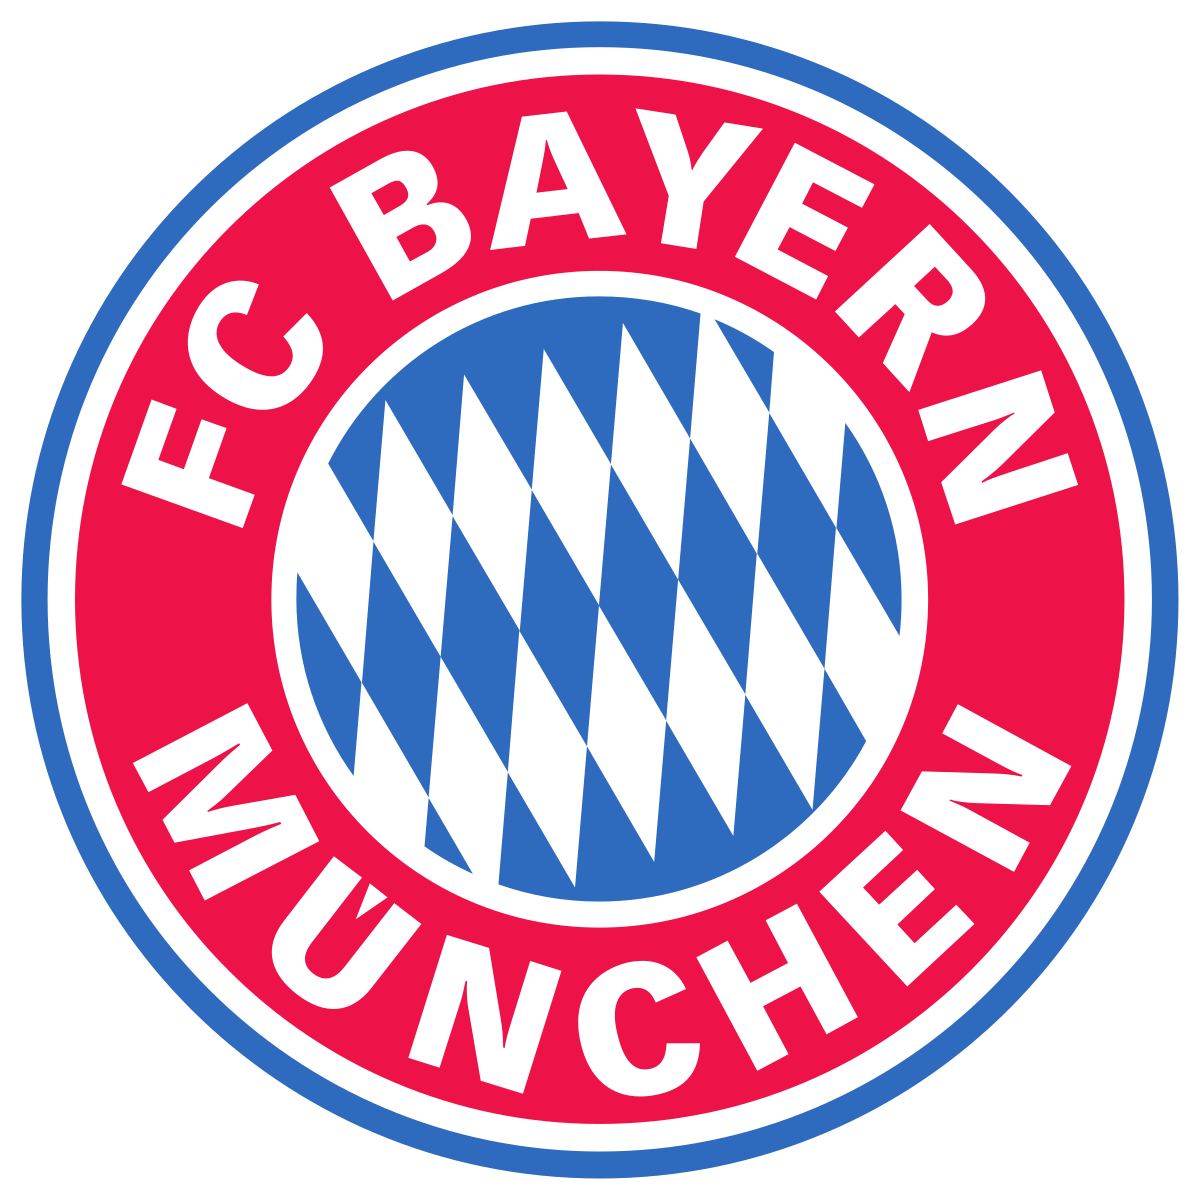 FC Bayern München - Wikipedia